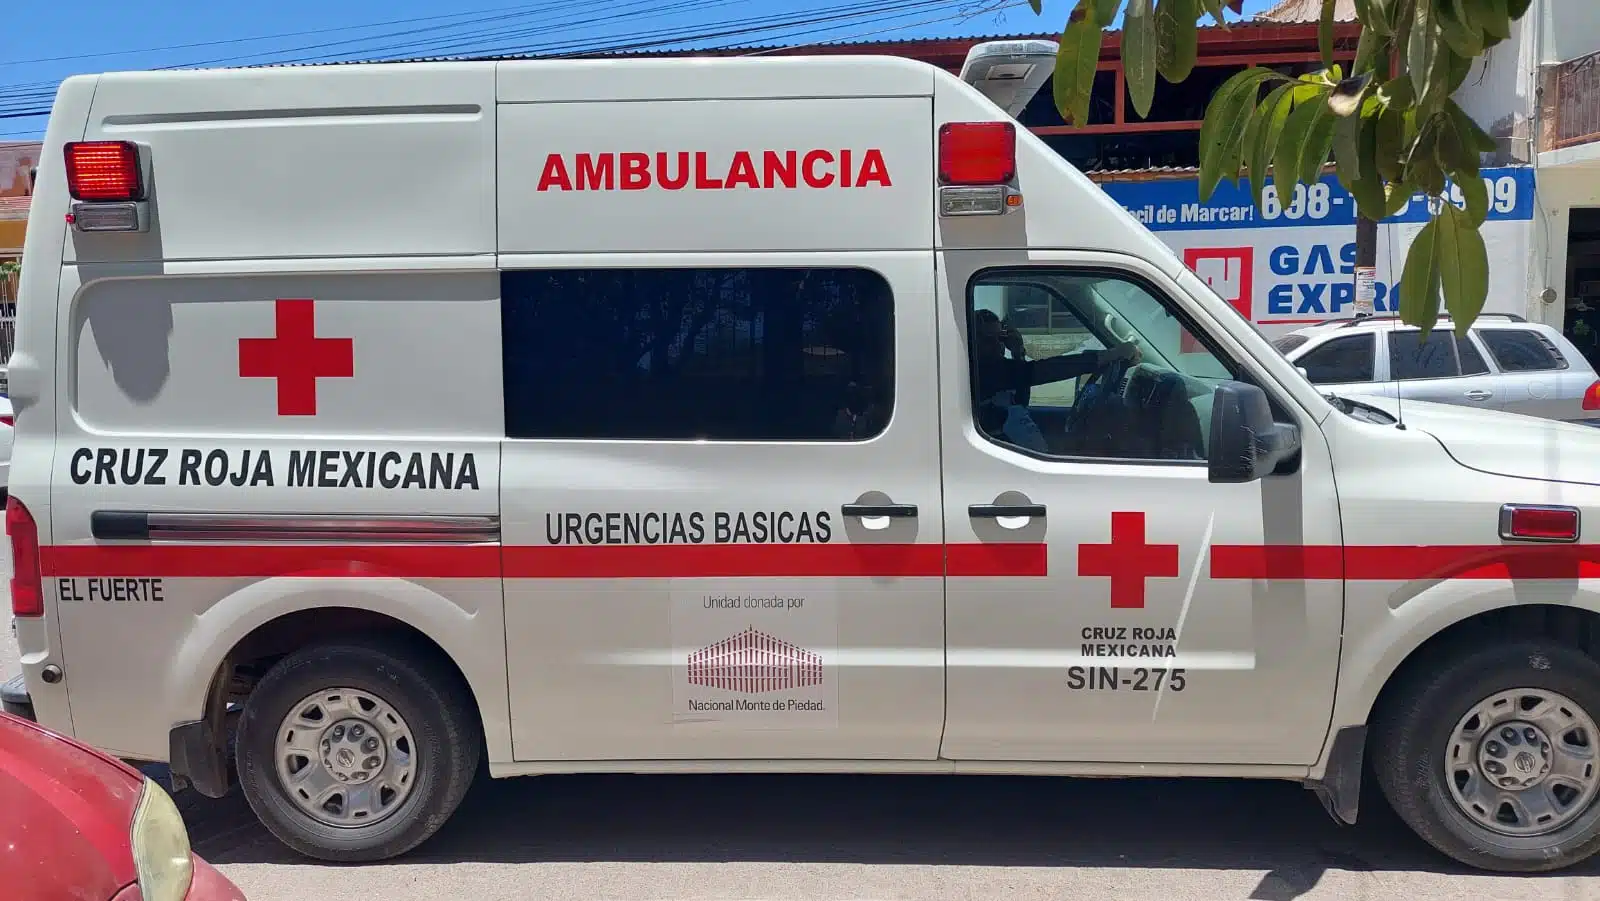 Paramédicos de la Cruz Roja auxiliaron al lesionado y lo llevaron al Hospital General de Los Mochis.